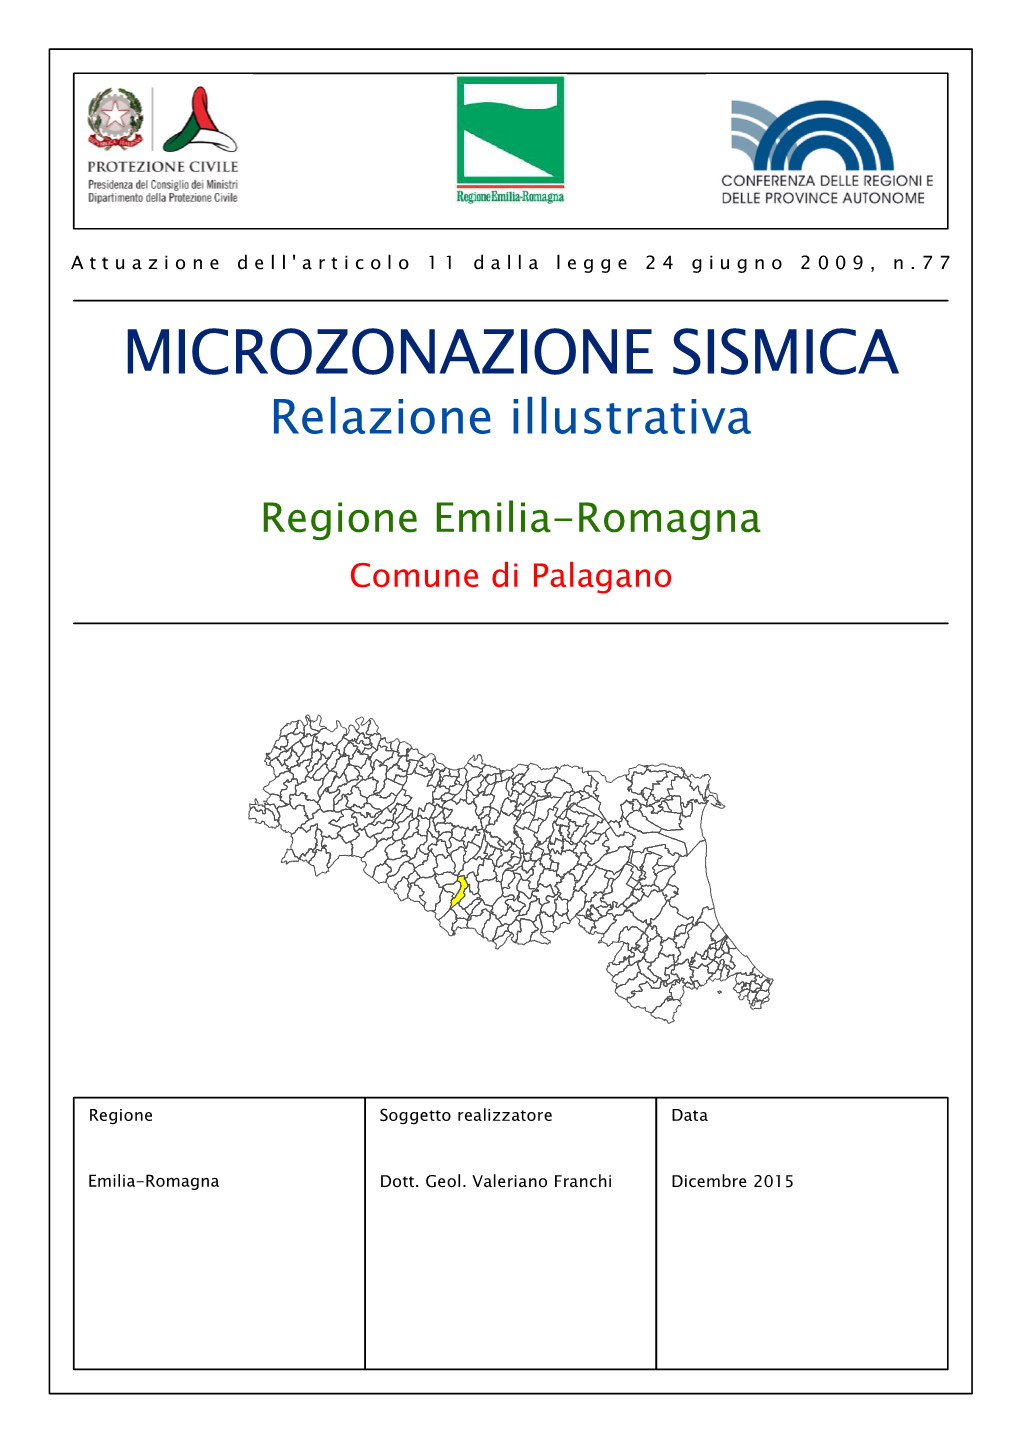 MICROZONAZIONE SISMICA Relazione Illustrativa